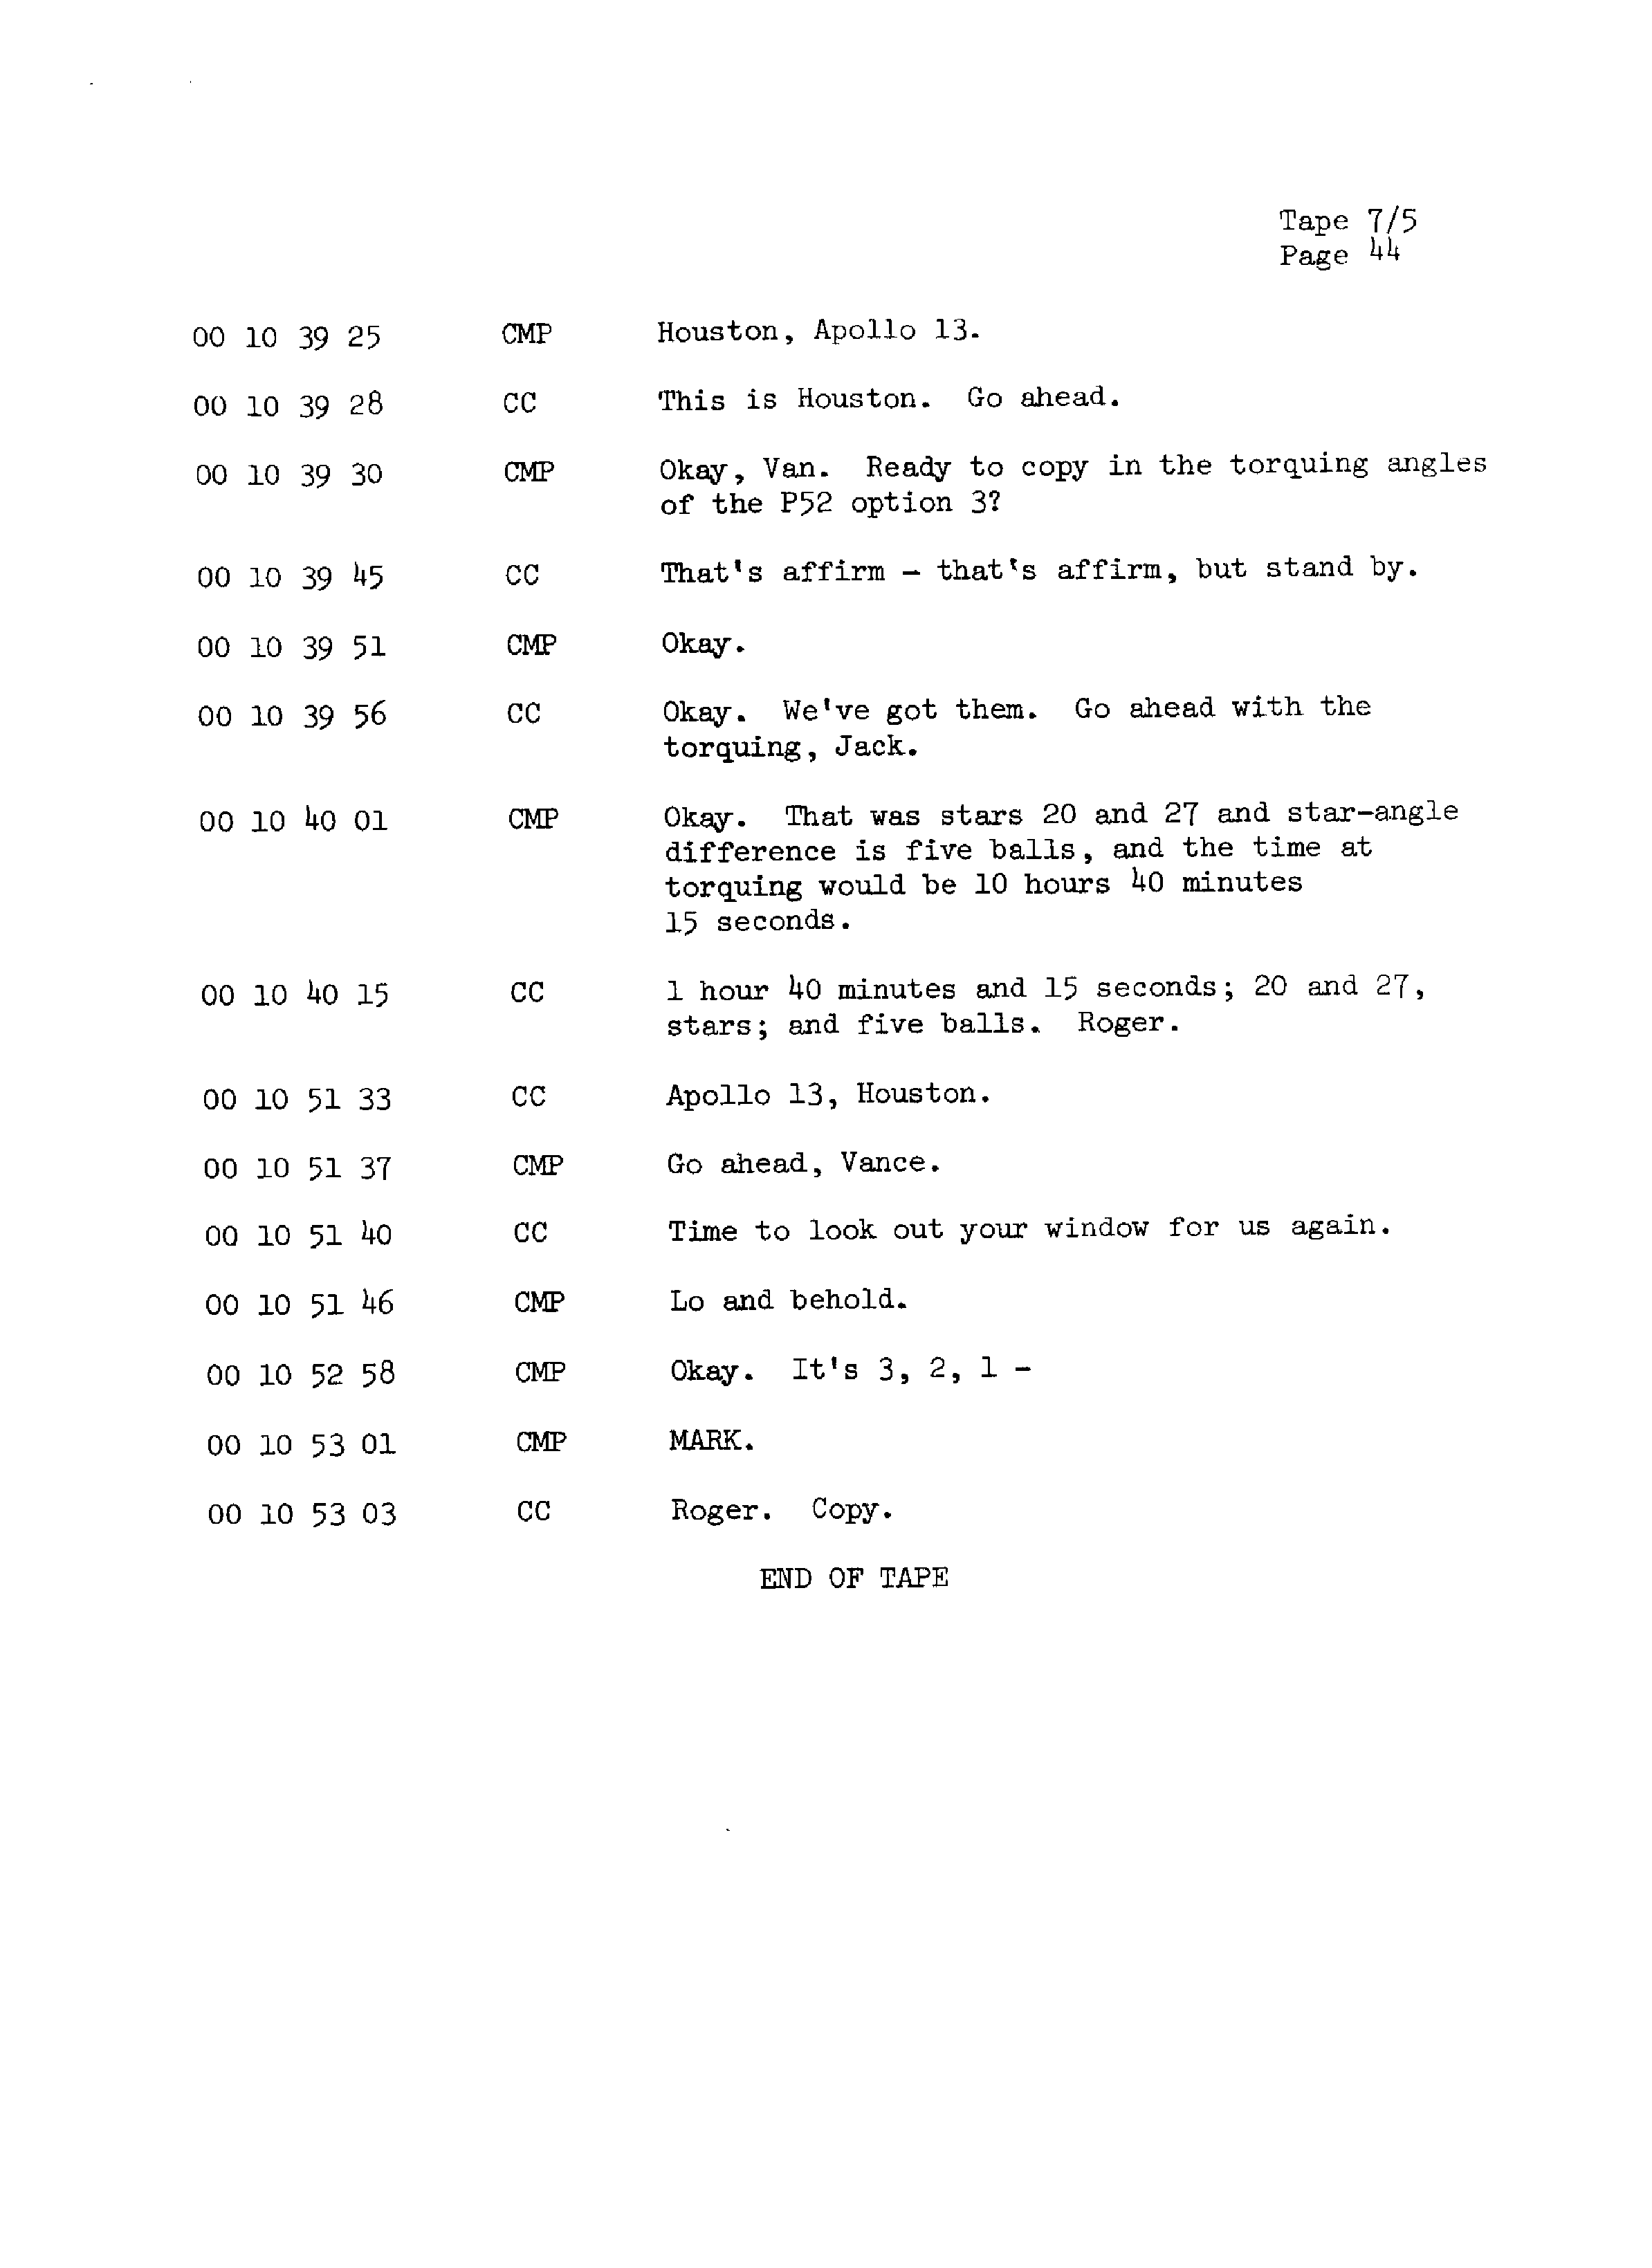 Page 51 of Apollo 13’s original transcript